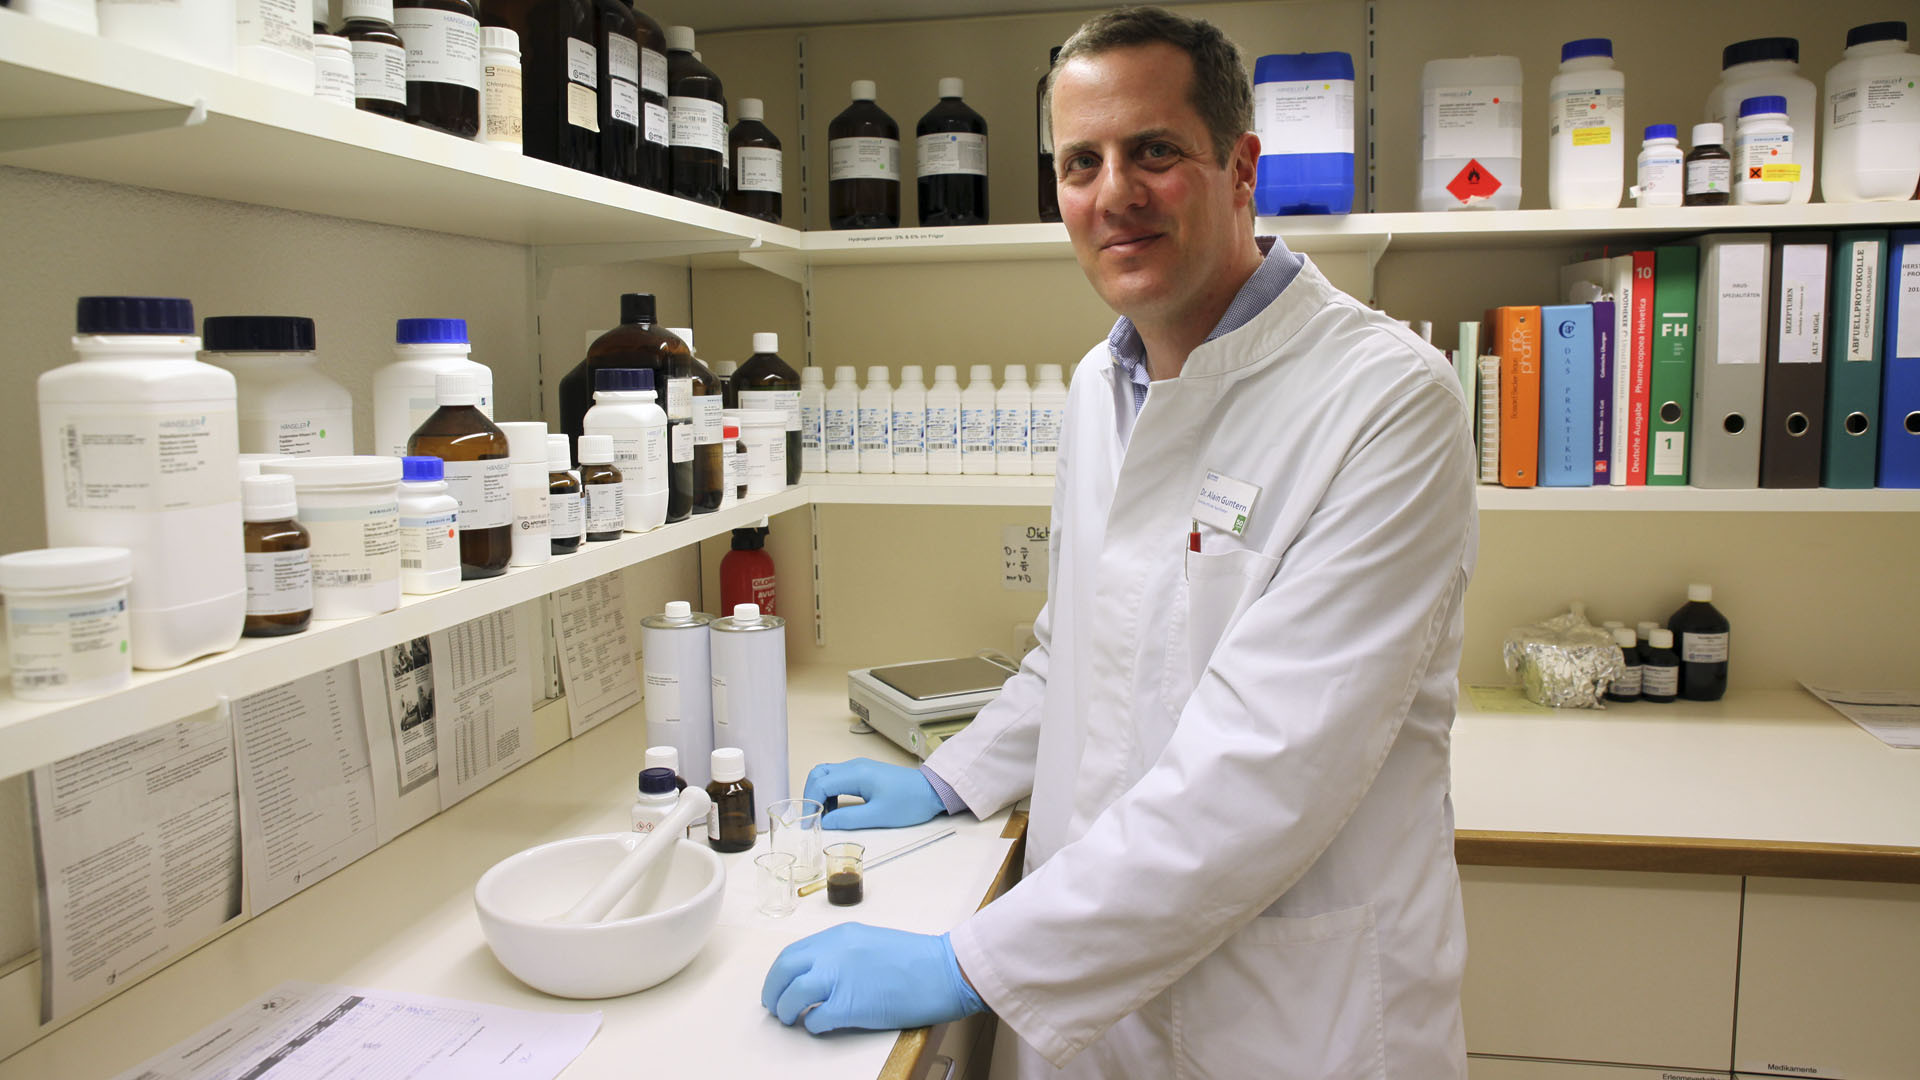 Brigue le 15 mars 2016. Le docteur Alain Guntern, dans le laboratoire de sa pharmacie. Il élabore un échantillon d'huile. (Photo: B. Hallet)